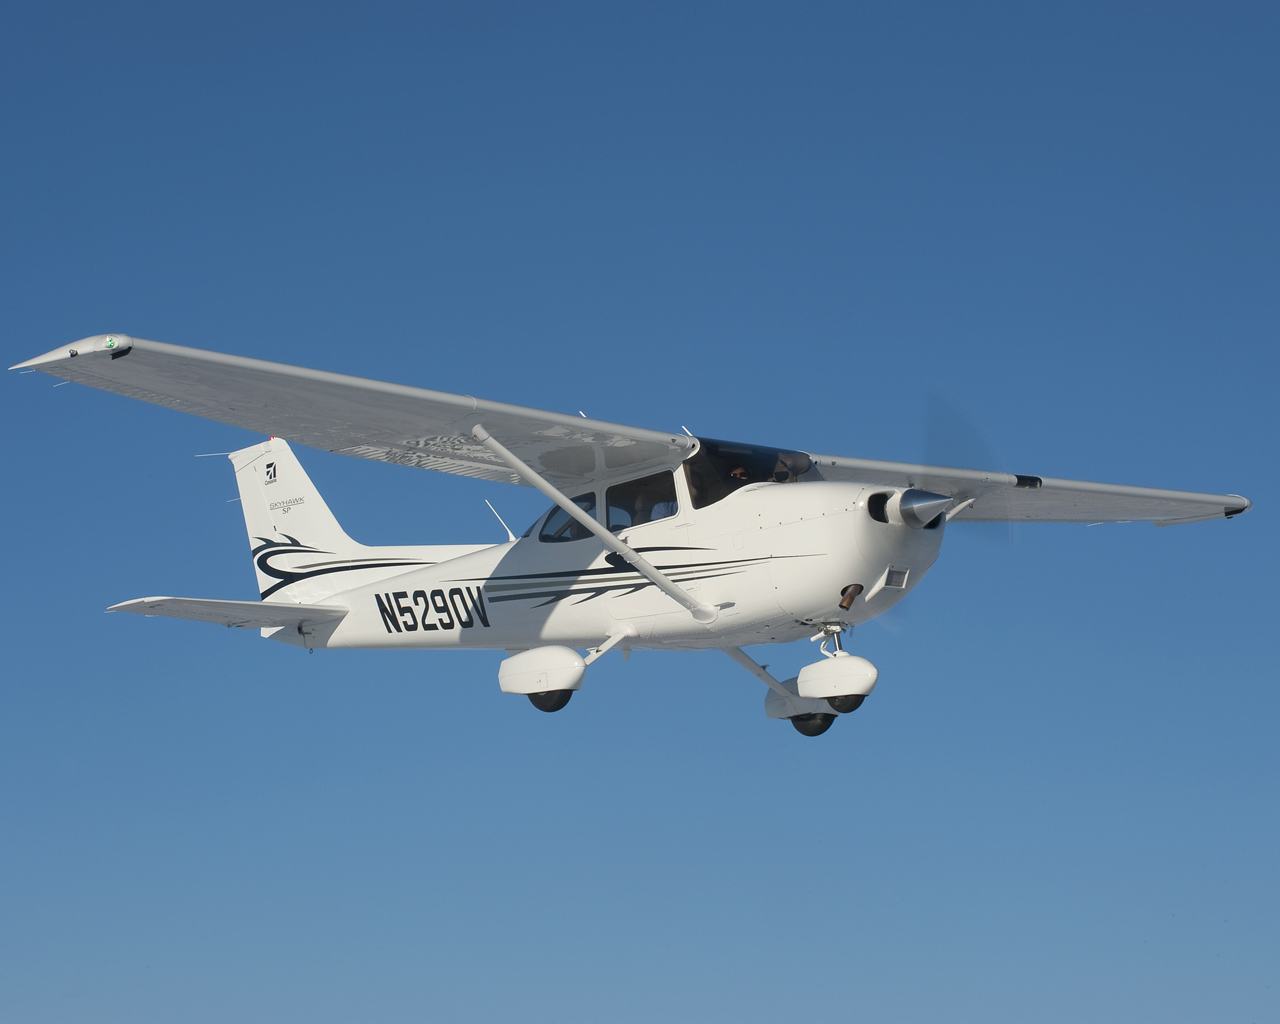 Cessna172